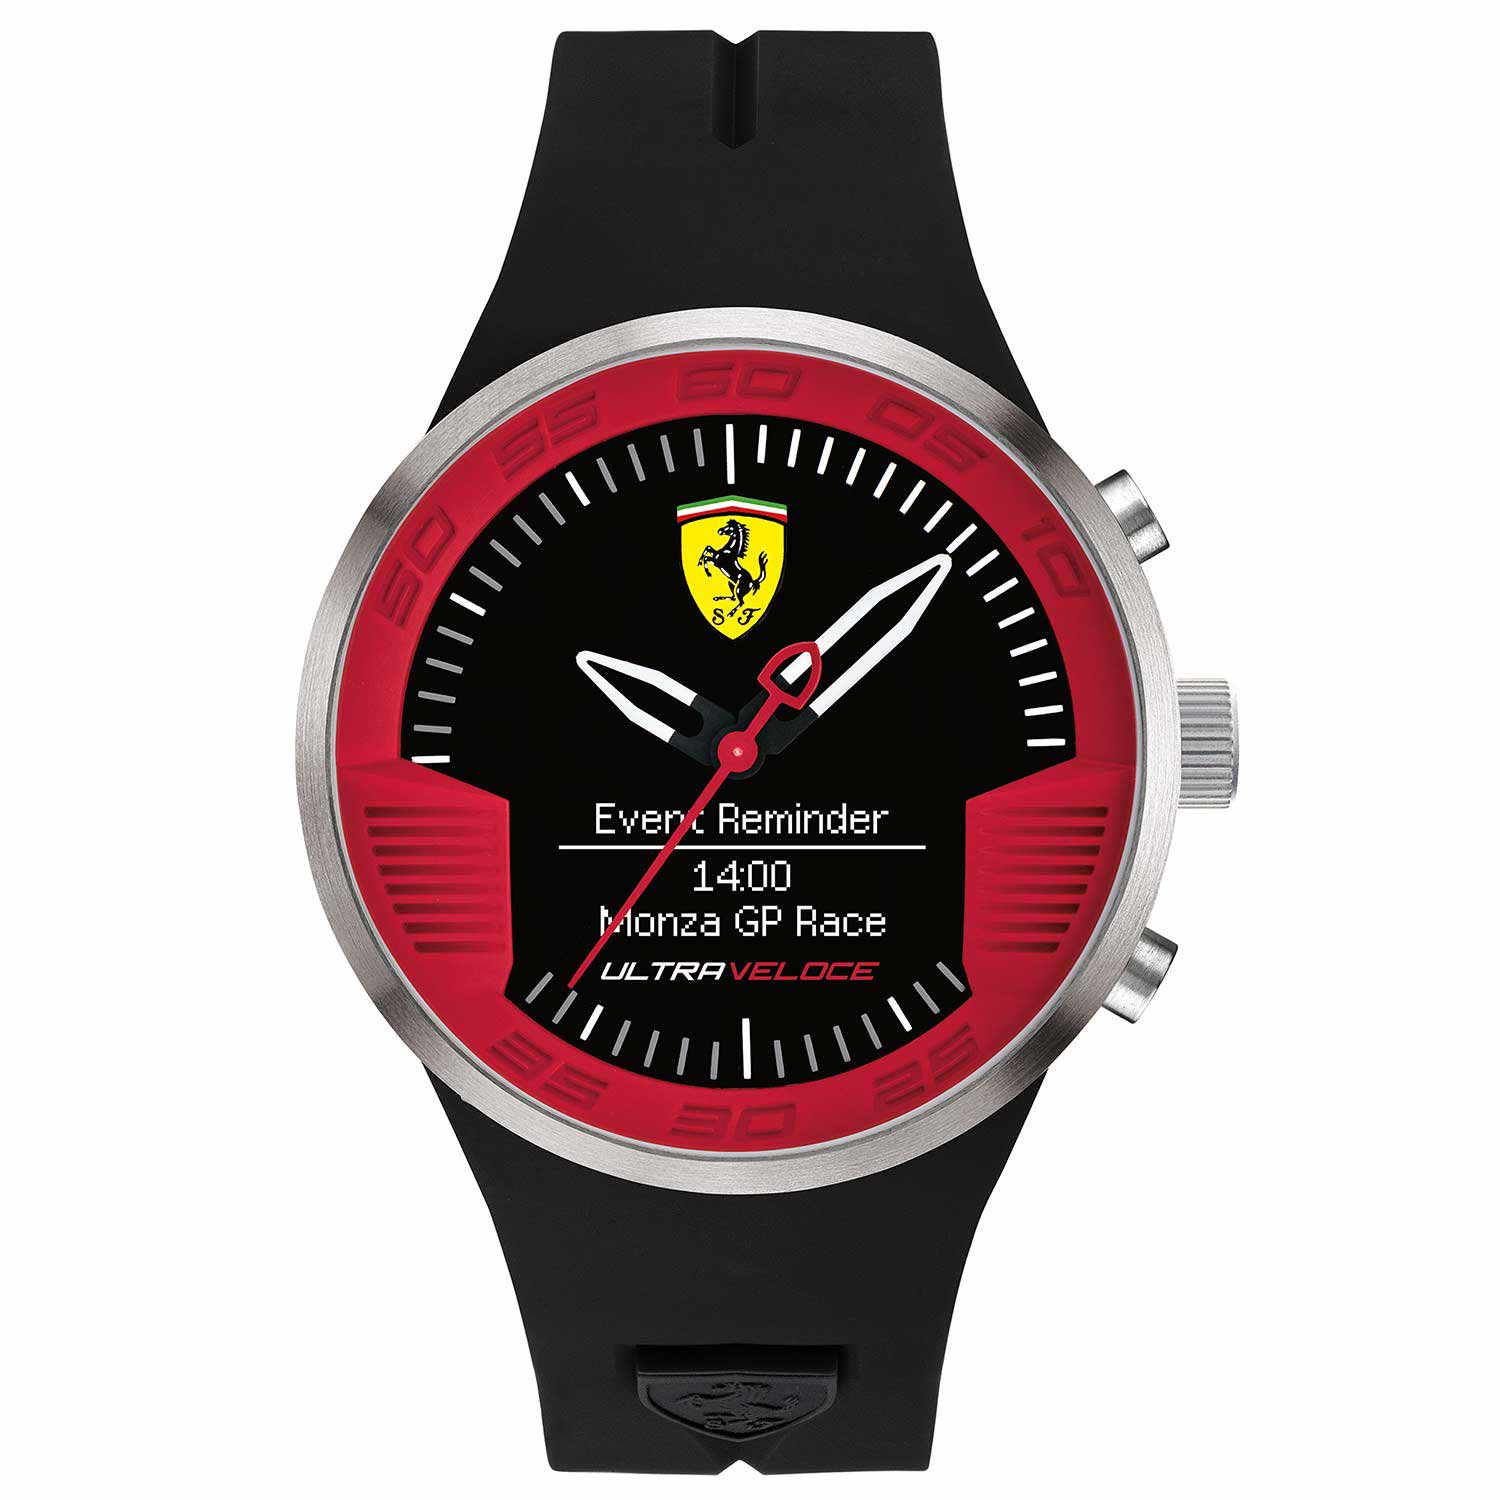 Reloj smartwatch deportivo de hombre Scuderia Ferrari  de color negro